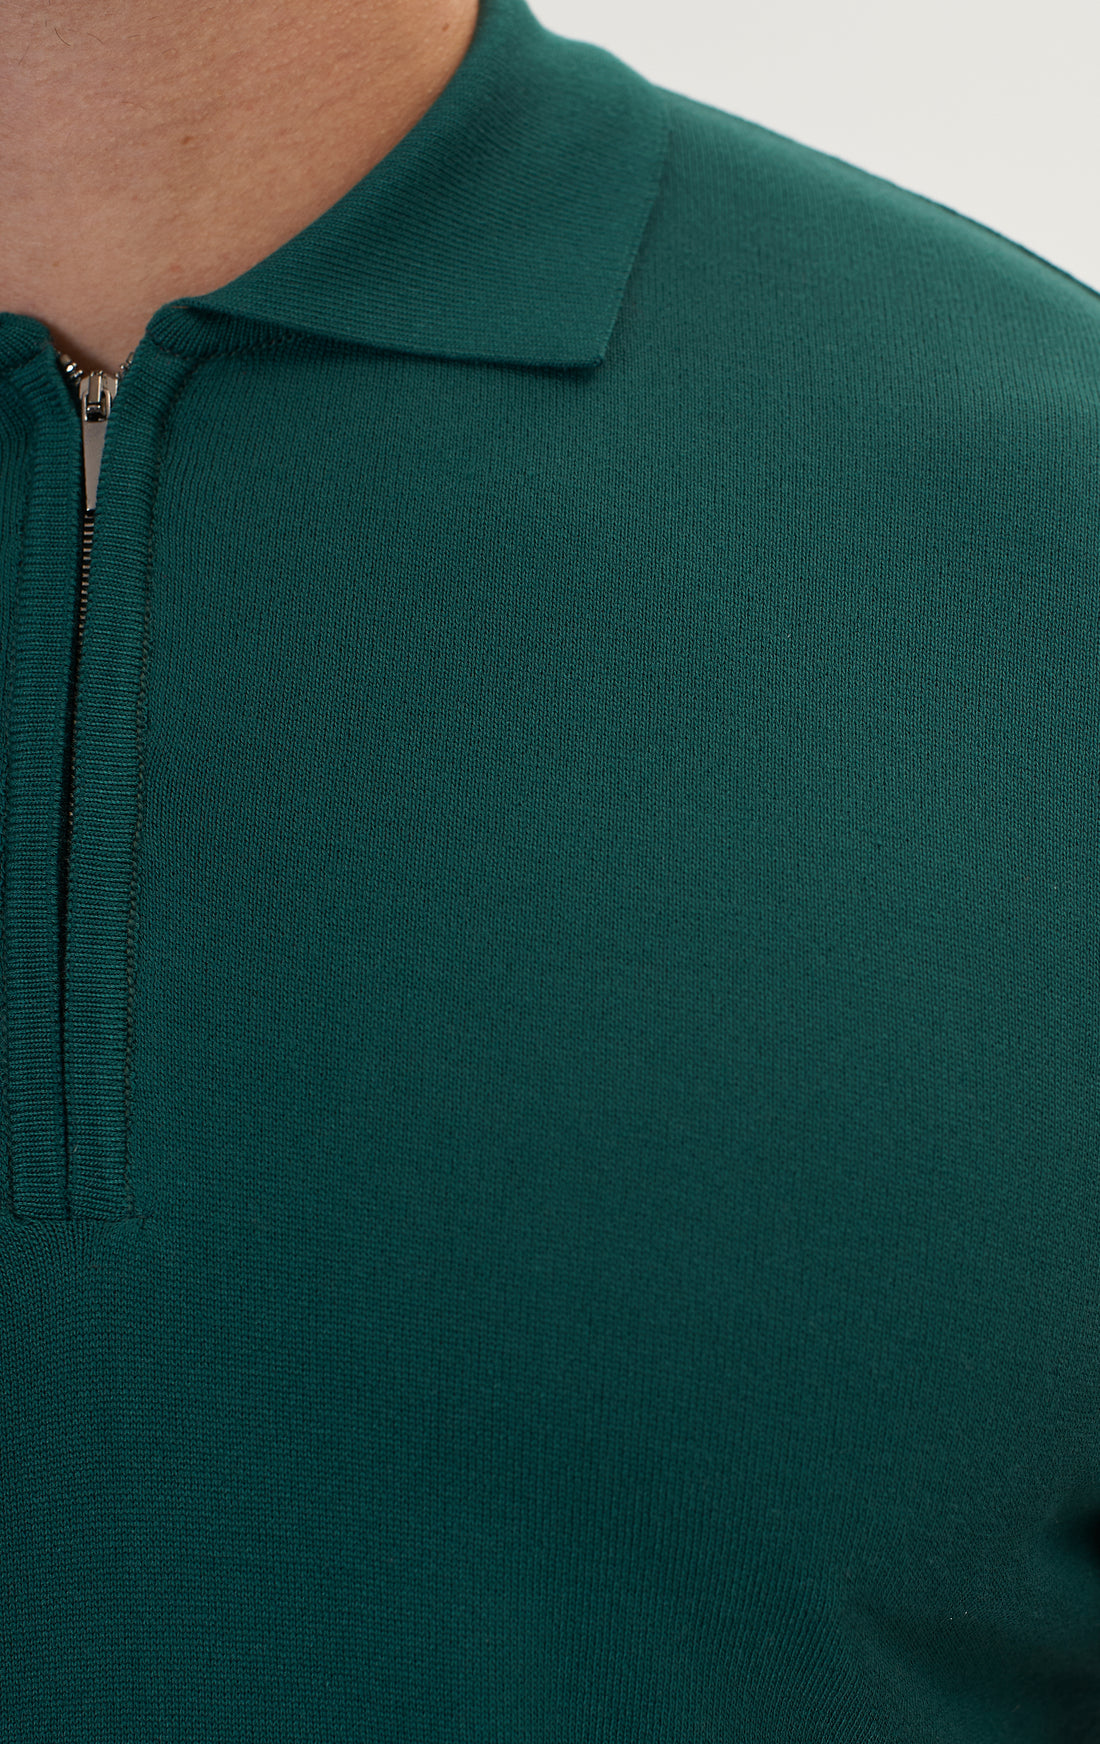 Zipper Closure Lightweight Polo Tee - Green